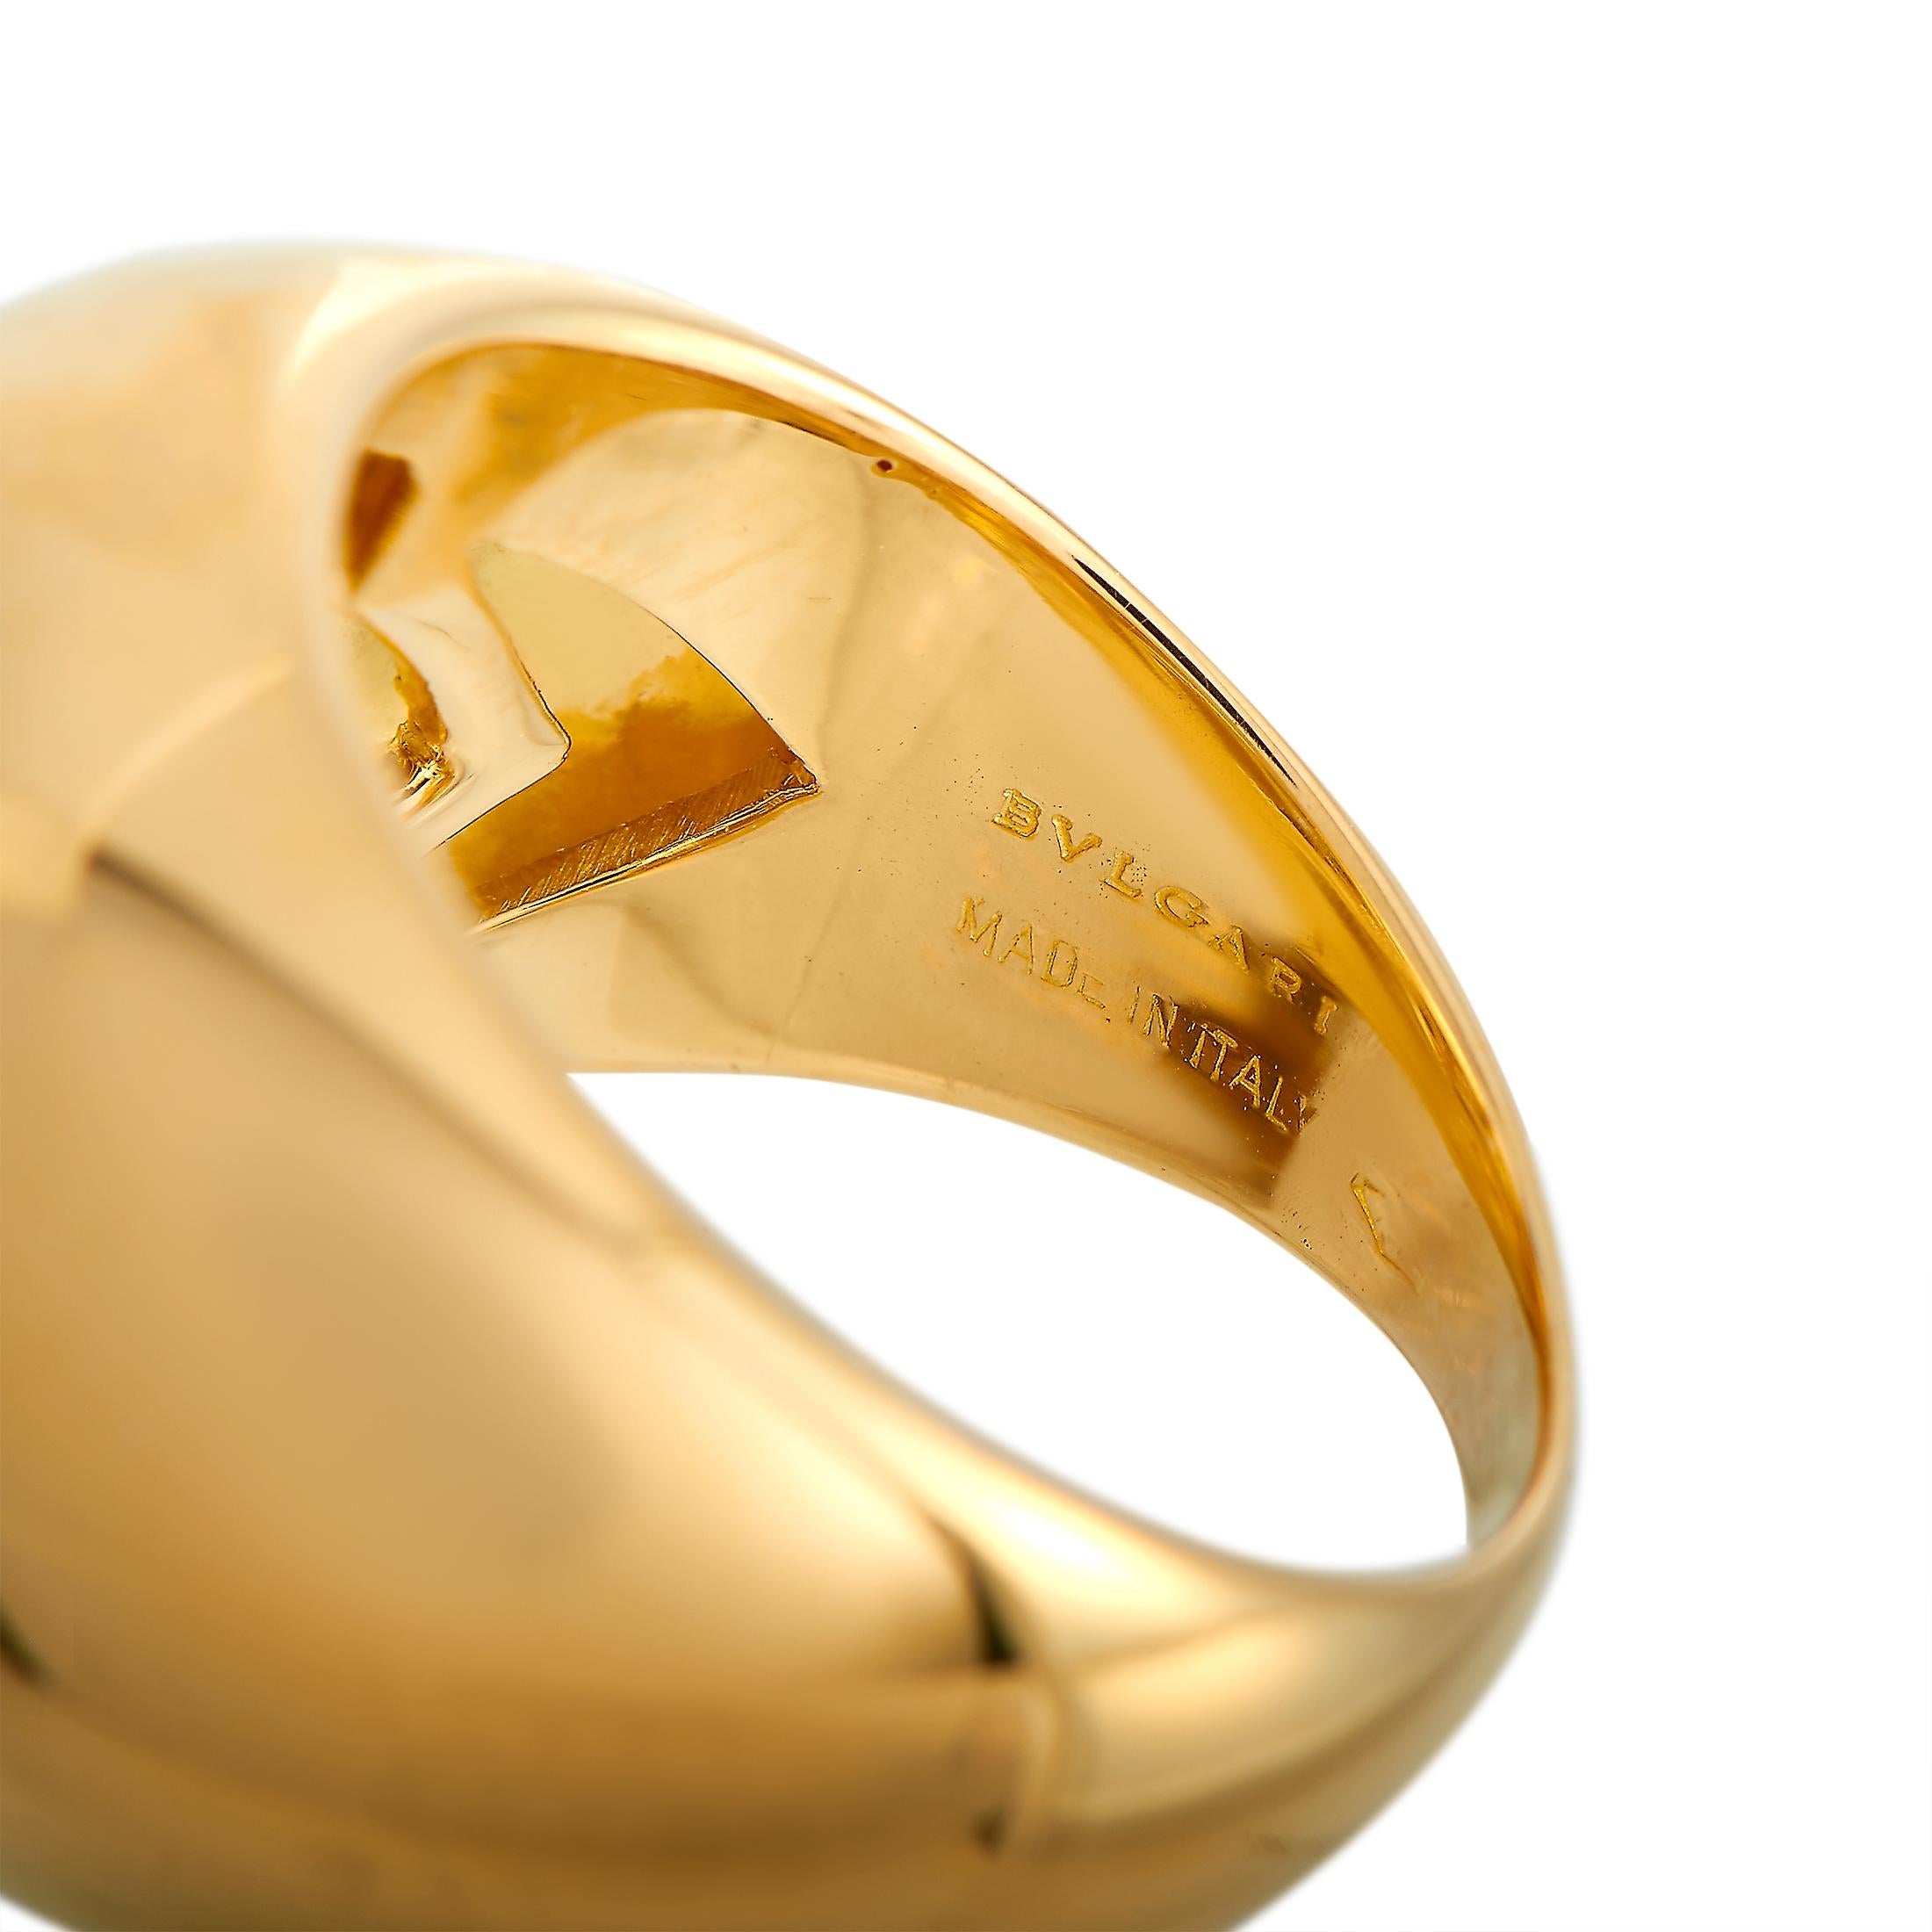 Women's Bvlgari 18 Karat Yellow Gold 0.30 Carat Diamond Ring